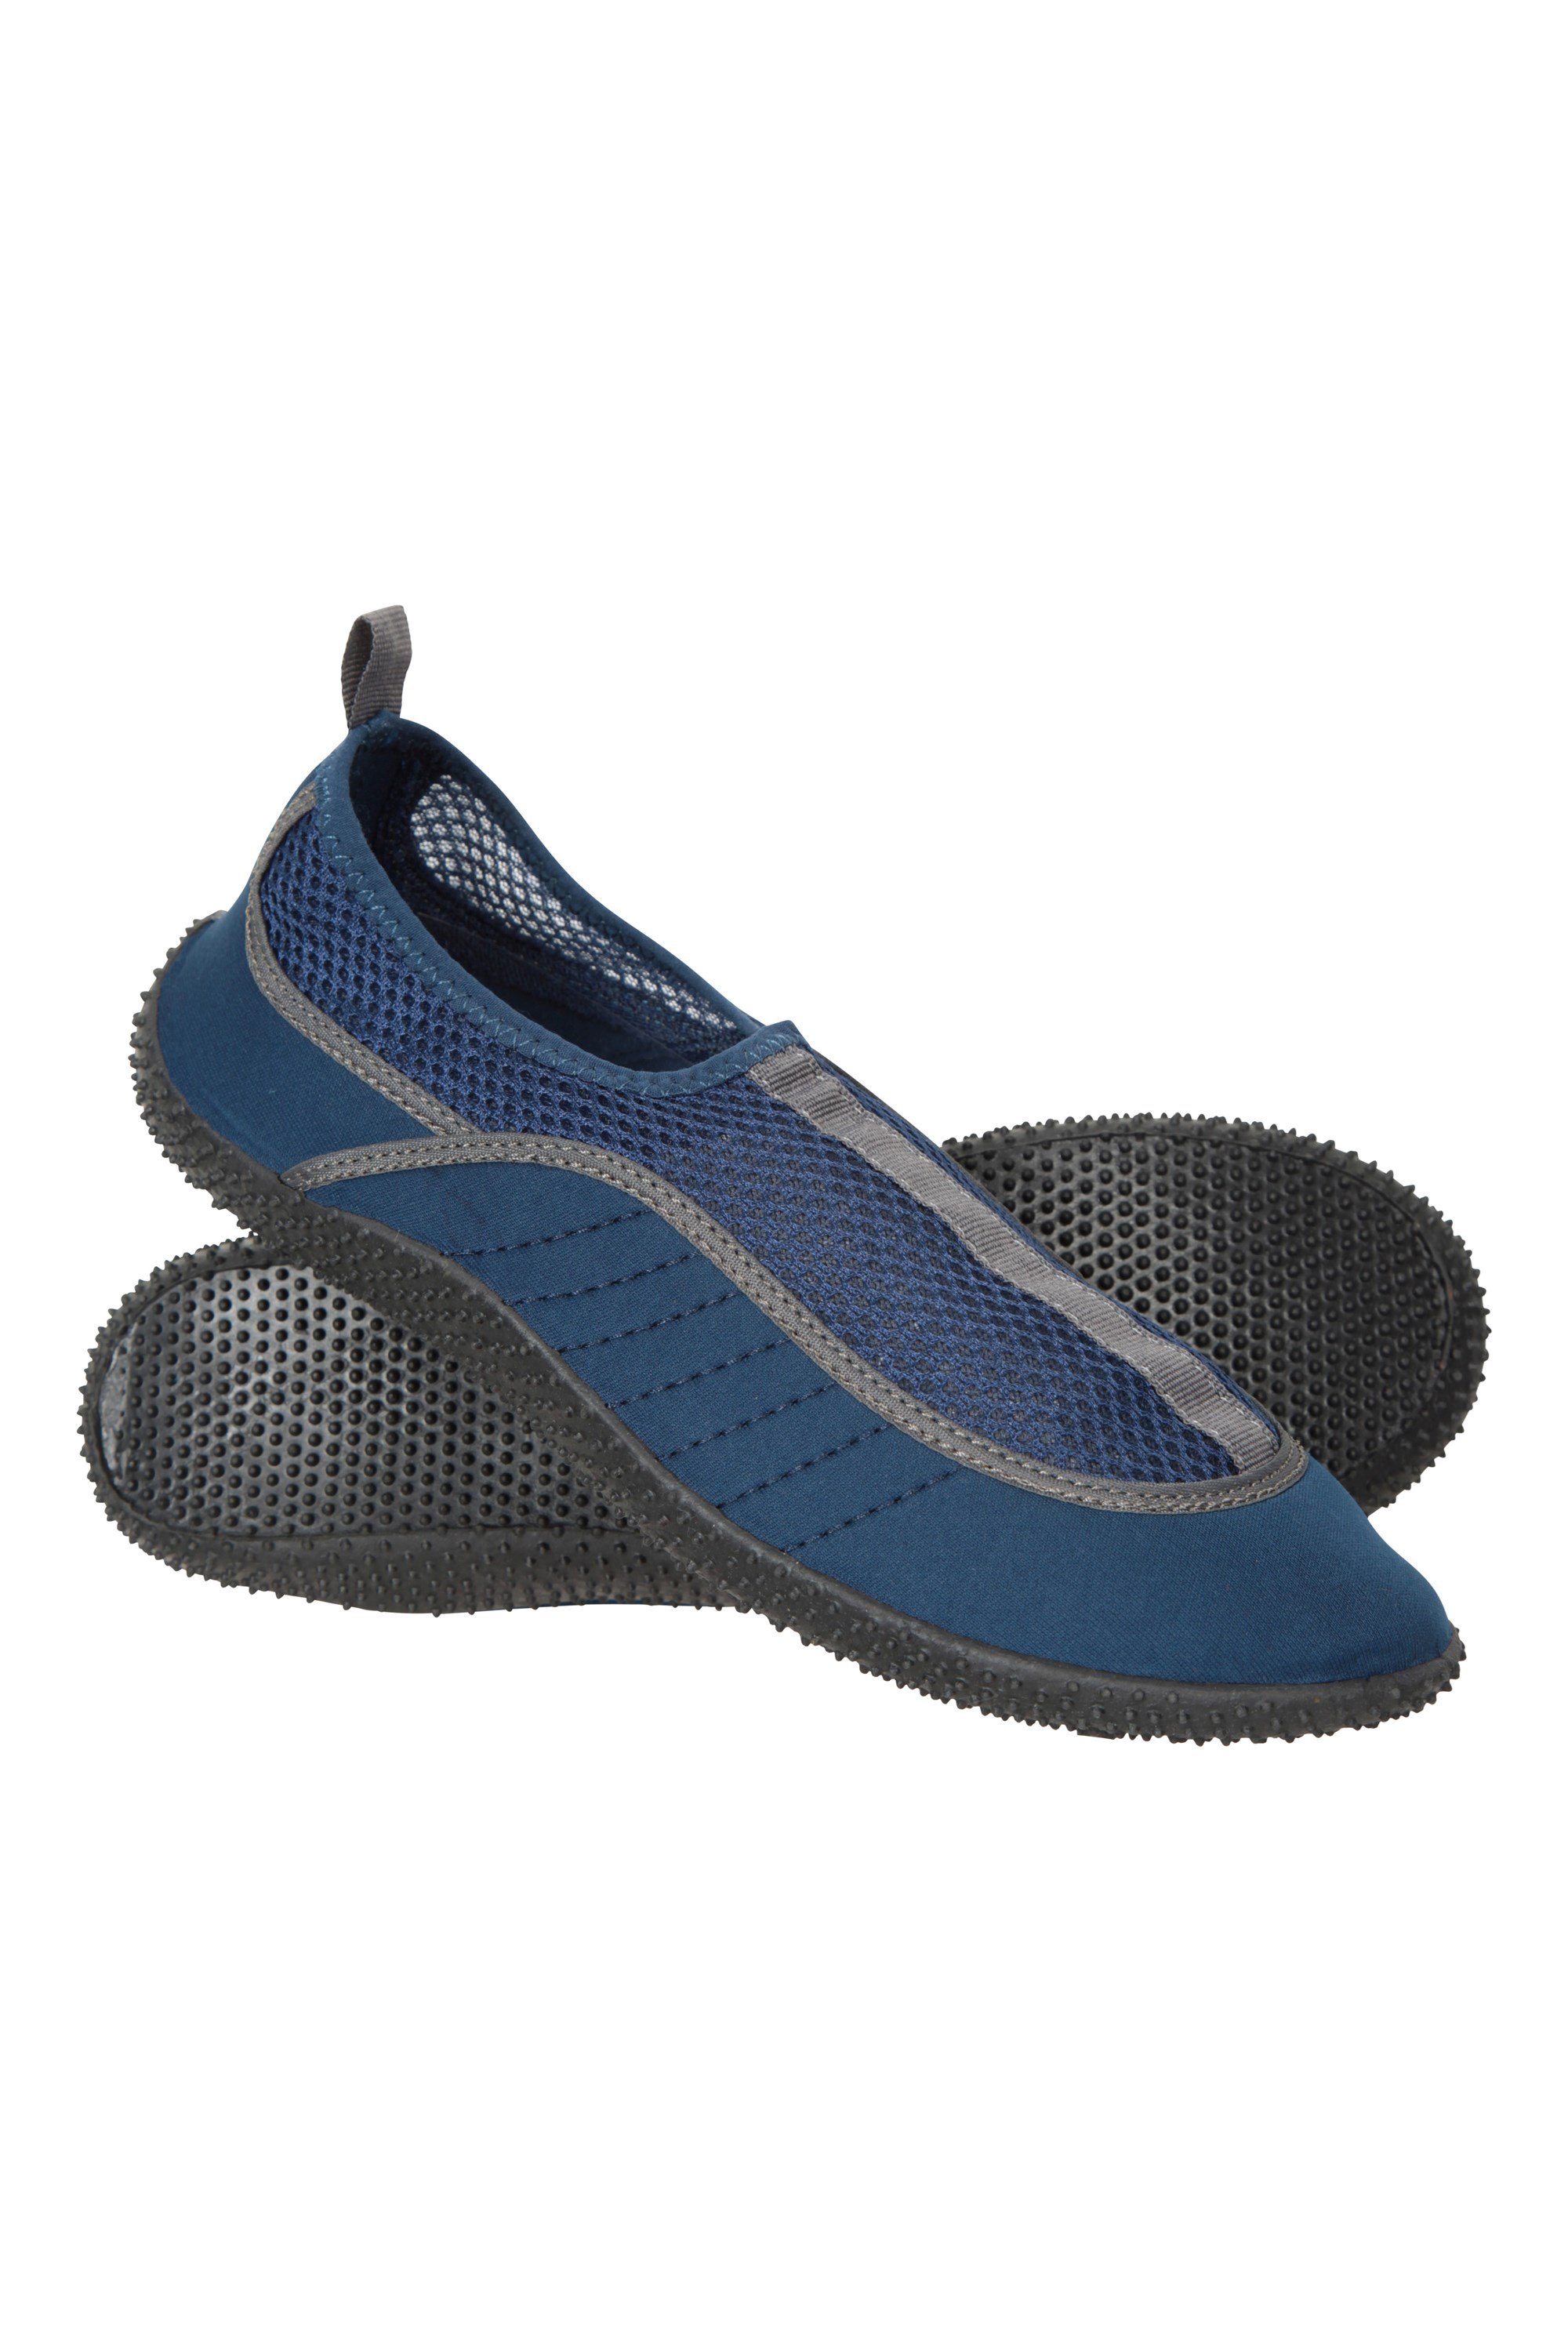 Water Shoes & Aqua Shoes | Mountain Warehouse GB